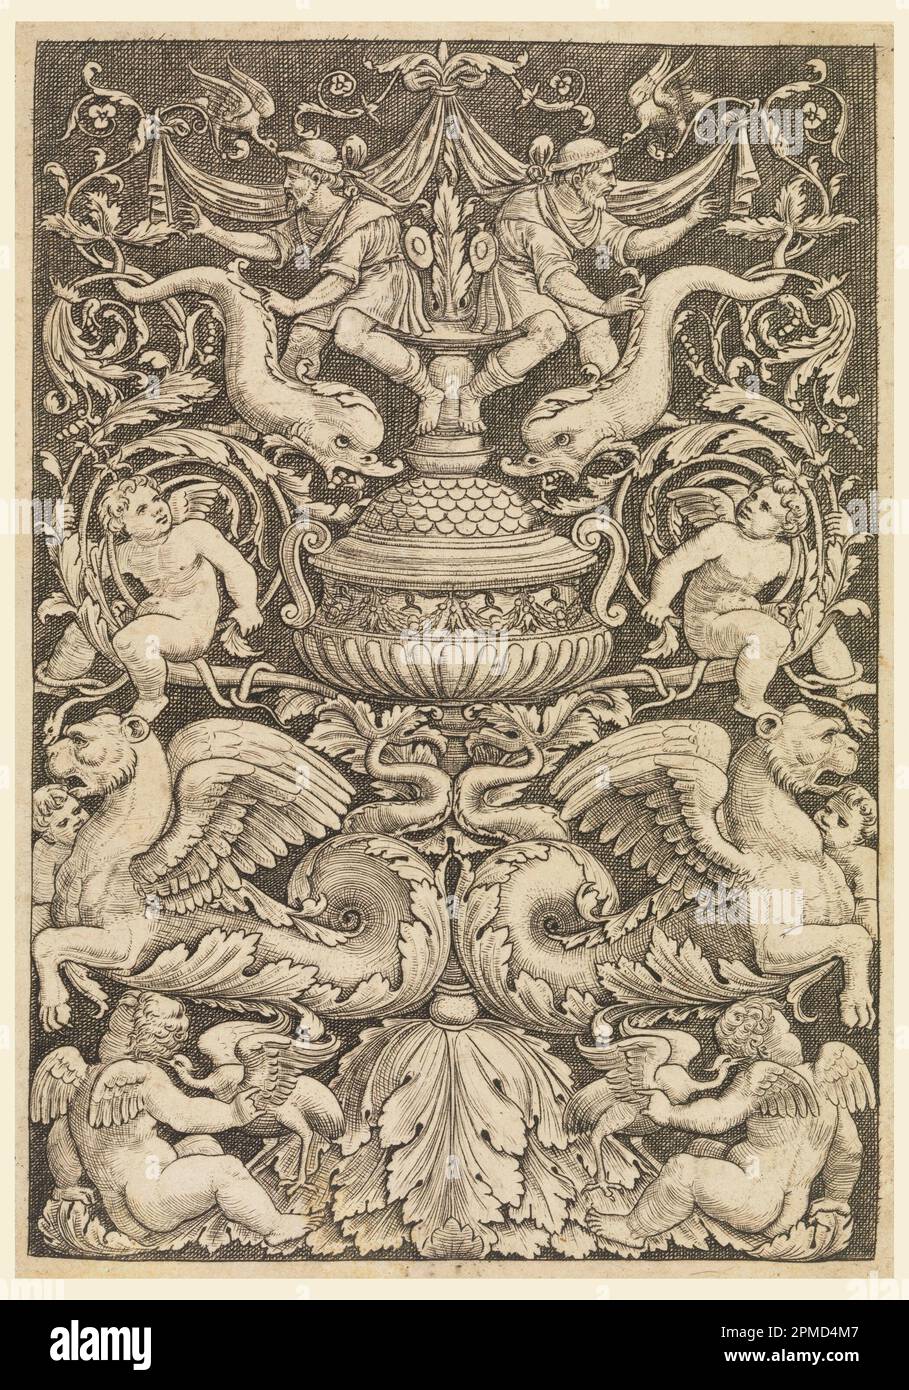 Stampa, grottesca con delfini e leoni alati; incisa dal Maestro del Die; Italia; incisione su carta stesa; tappetino: 45,7 x 35,6 cm (18 x 14 pollici) Foto Stock